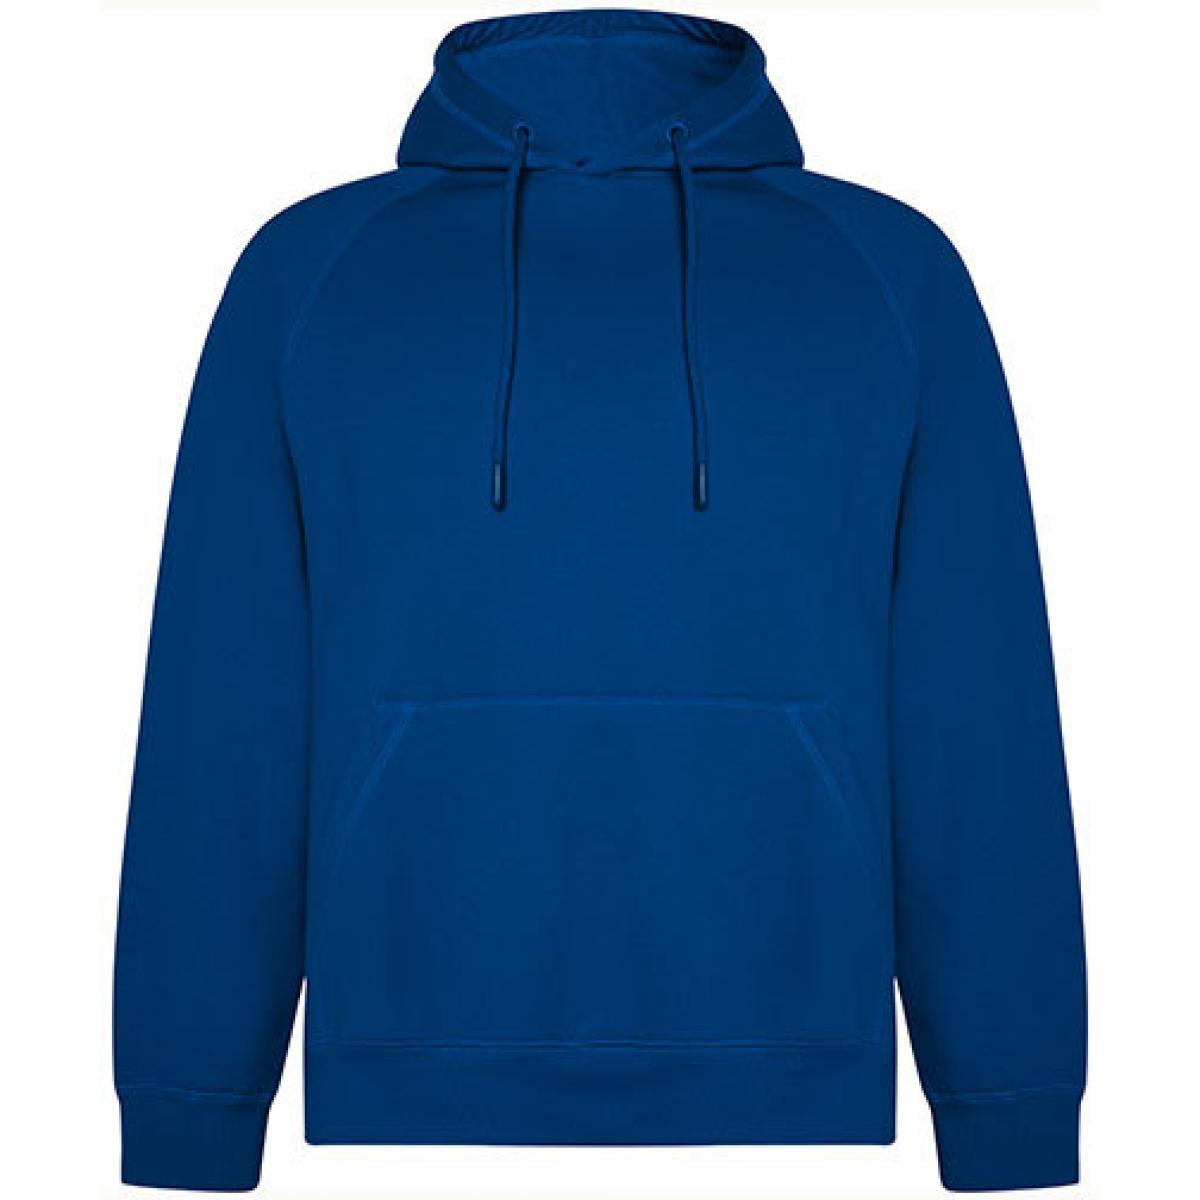 Hersteller: Roly Eco Herstellernummer: SU1074 Artikelbezeichnung: Vinson Organic Hooded Sweatshirt - Unisex Kapuzenpullover Farbe: Royal Blue 05